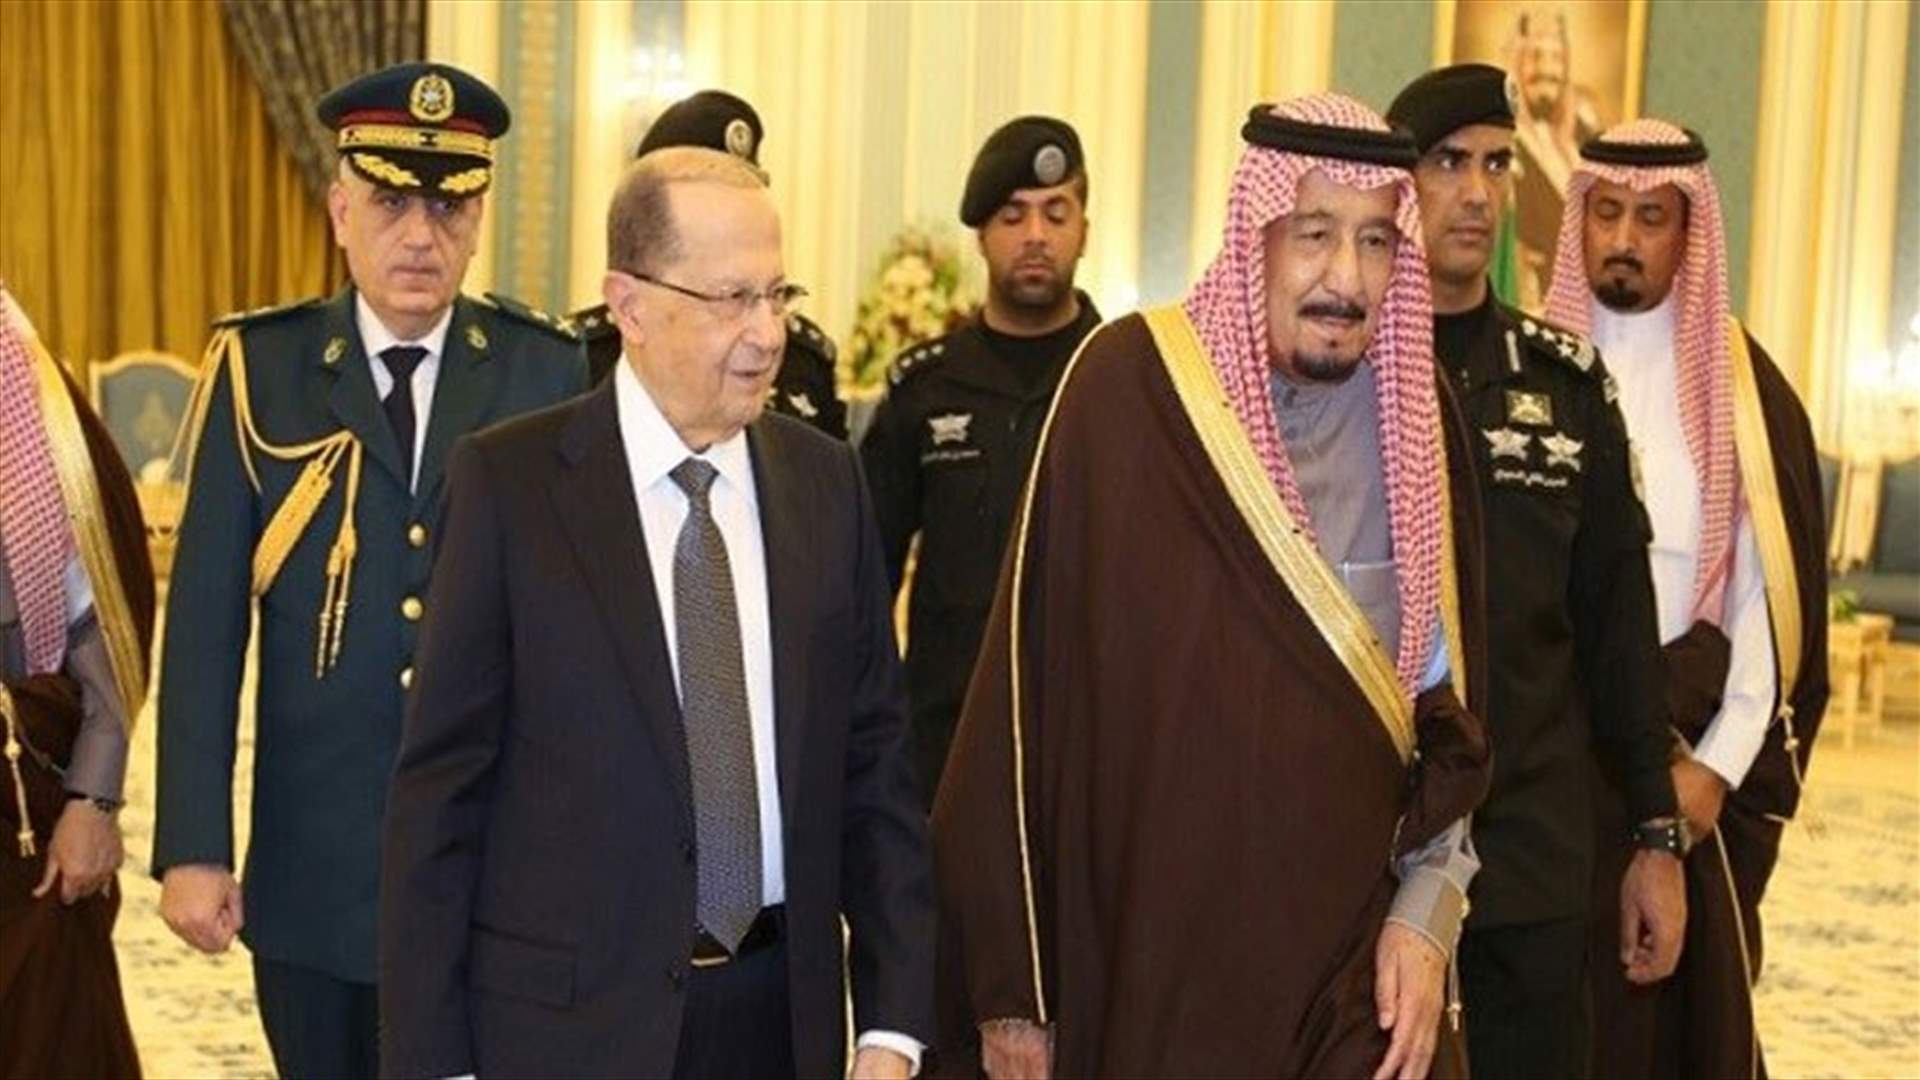 لمستُ ما كنتُ أتوقعه... الرئيس عون: السعودية حريصة على لبنان